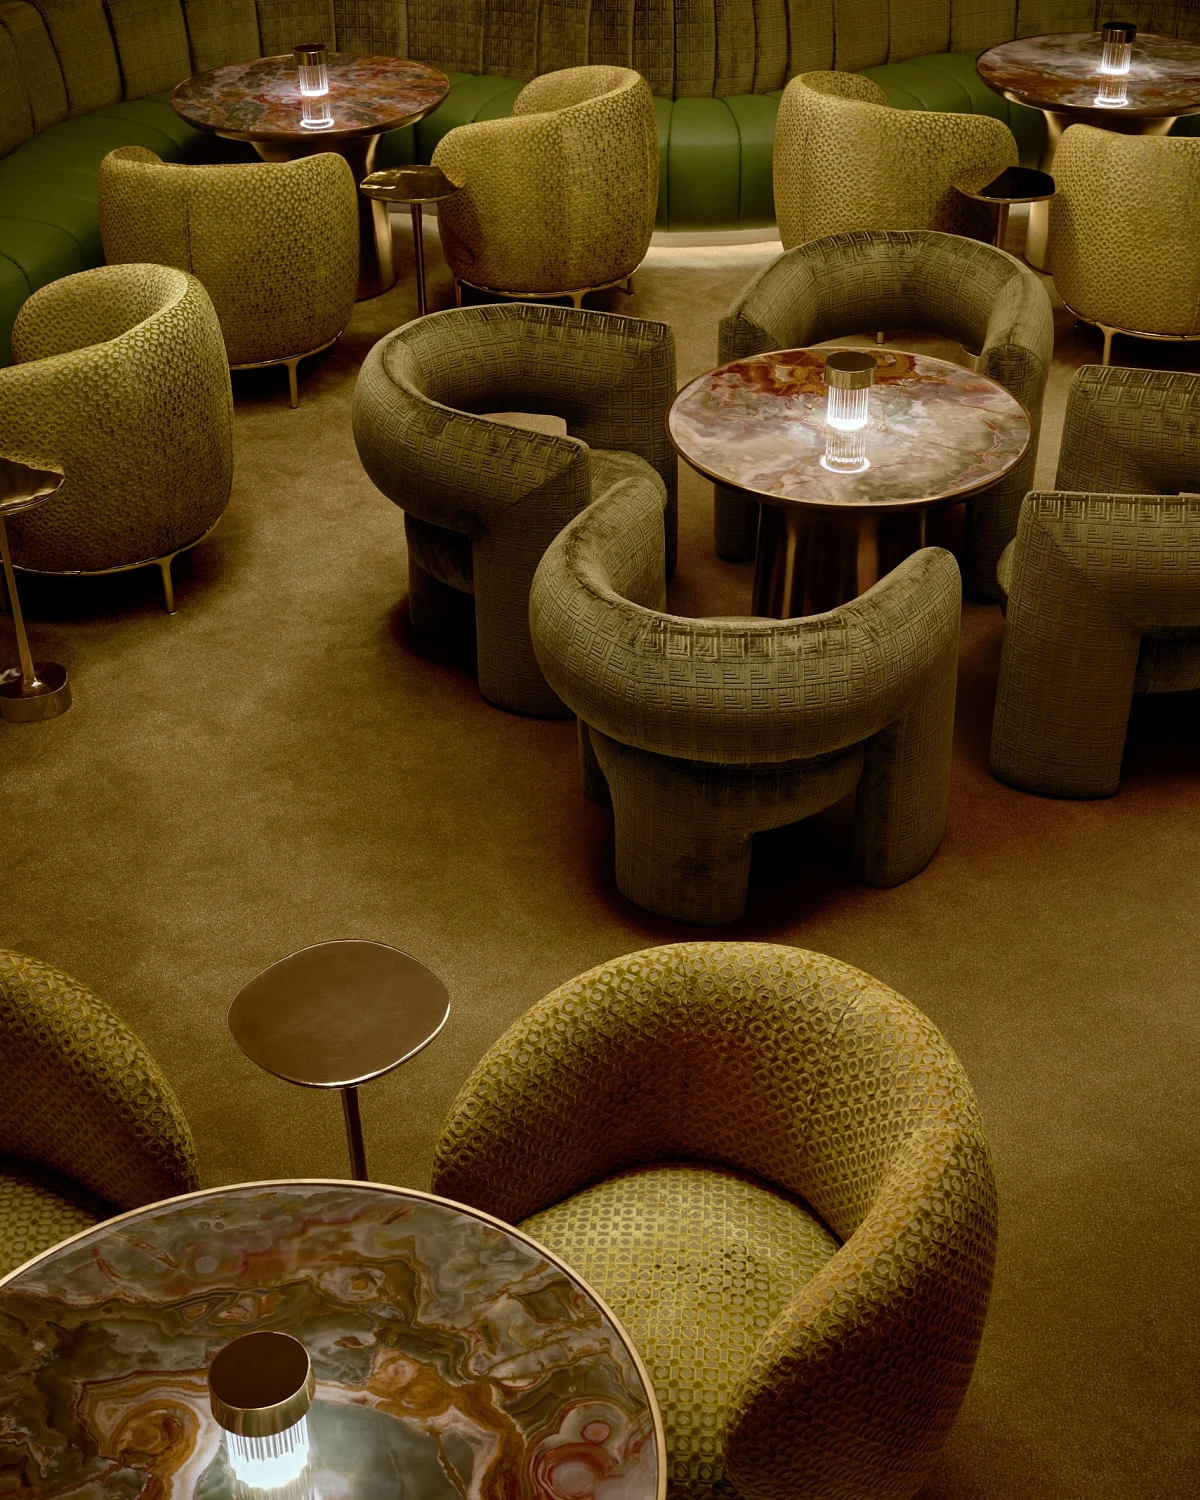 Бруно Марс и Yabu Pushelberg спроектировали коктейль-бар в казино Лас-Вегаса